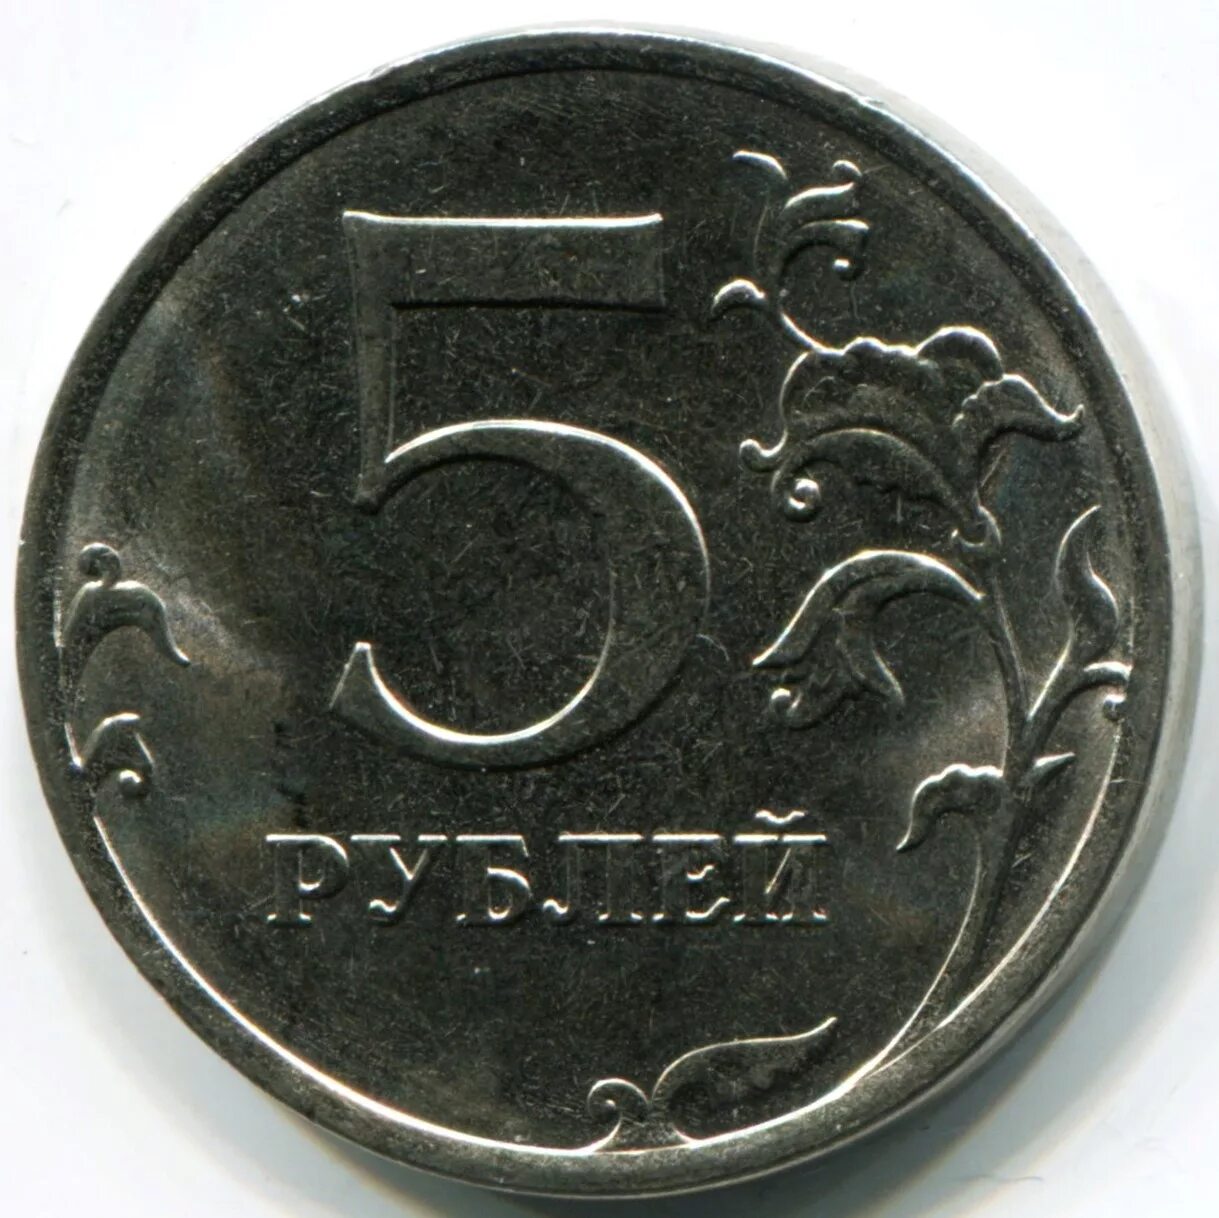 5 рублей 16 года. 5 Рублей 1997 года СПМД И ММД. Монета 5 рублей. Диаметр 5 рублевой монеты. Пять рублей.